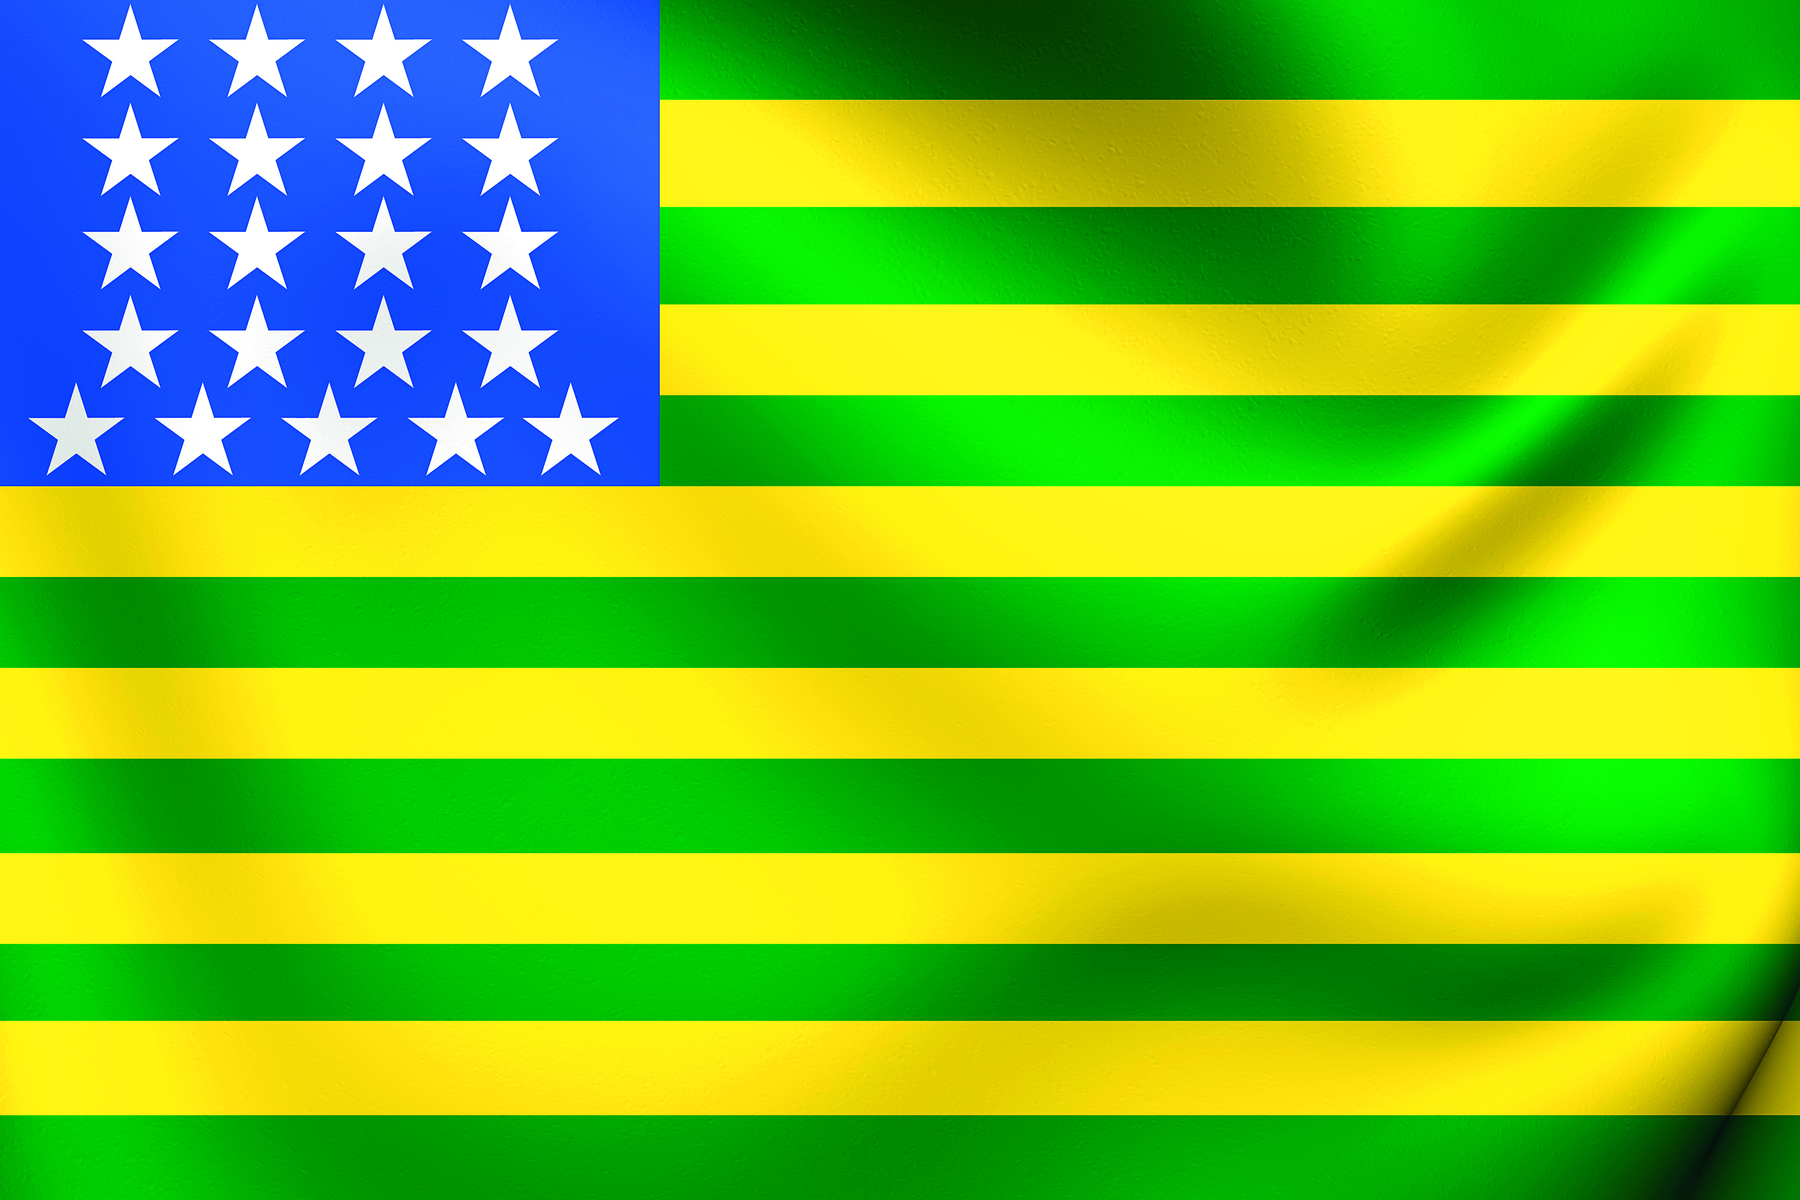 Ilustração. Bandeira retangular com listras finas verdes e amarelas intercaladas horizontalmente; são sete listras verdes e seis amarelas. No canto superior esquerdo um pequeno quadrado azul com vinte e uma estrelas brancas, com quatro linhas contendo quatro estrelas, e uma linha contendo cinco estrelas.